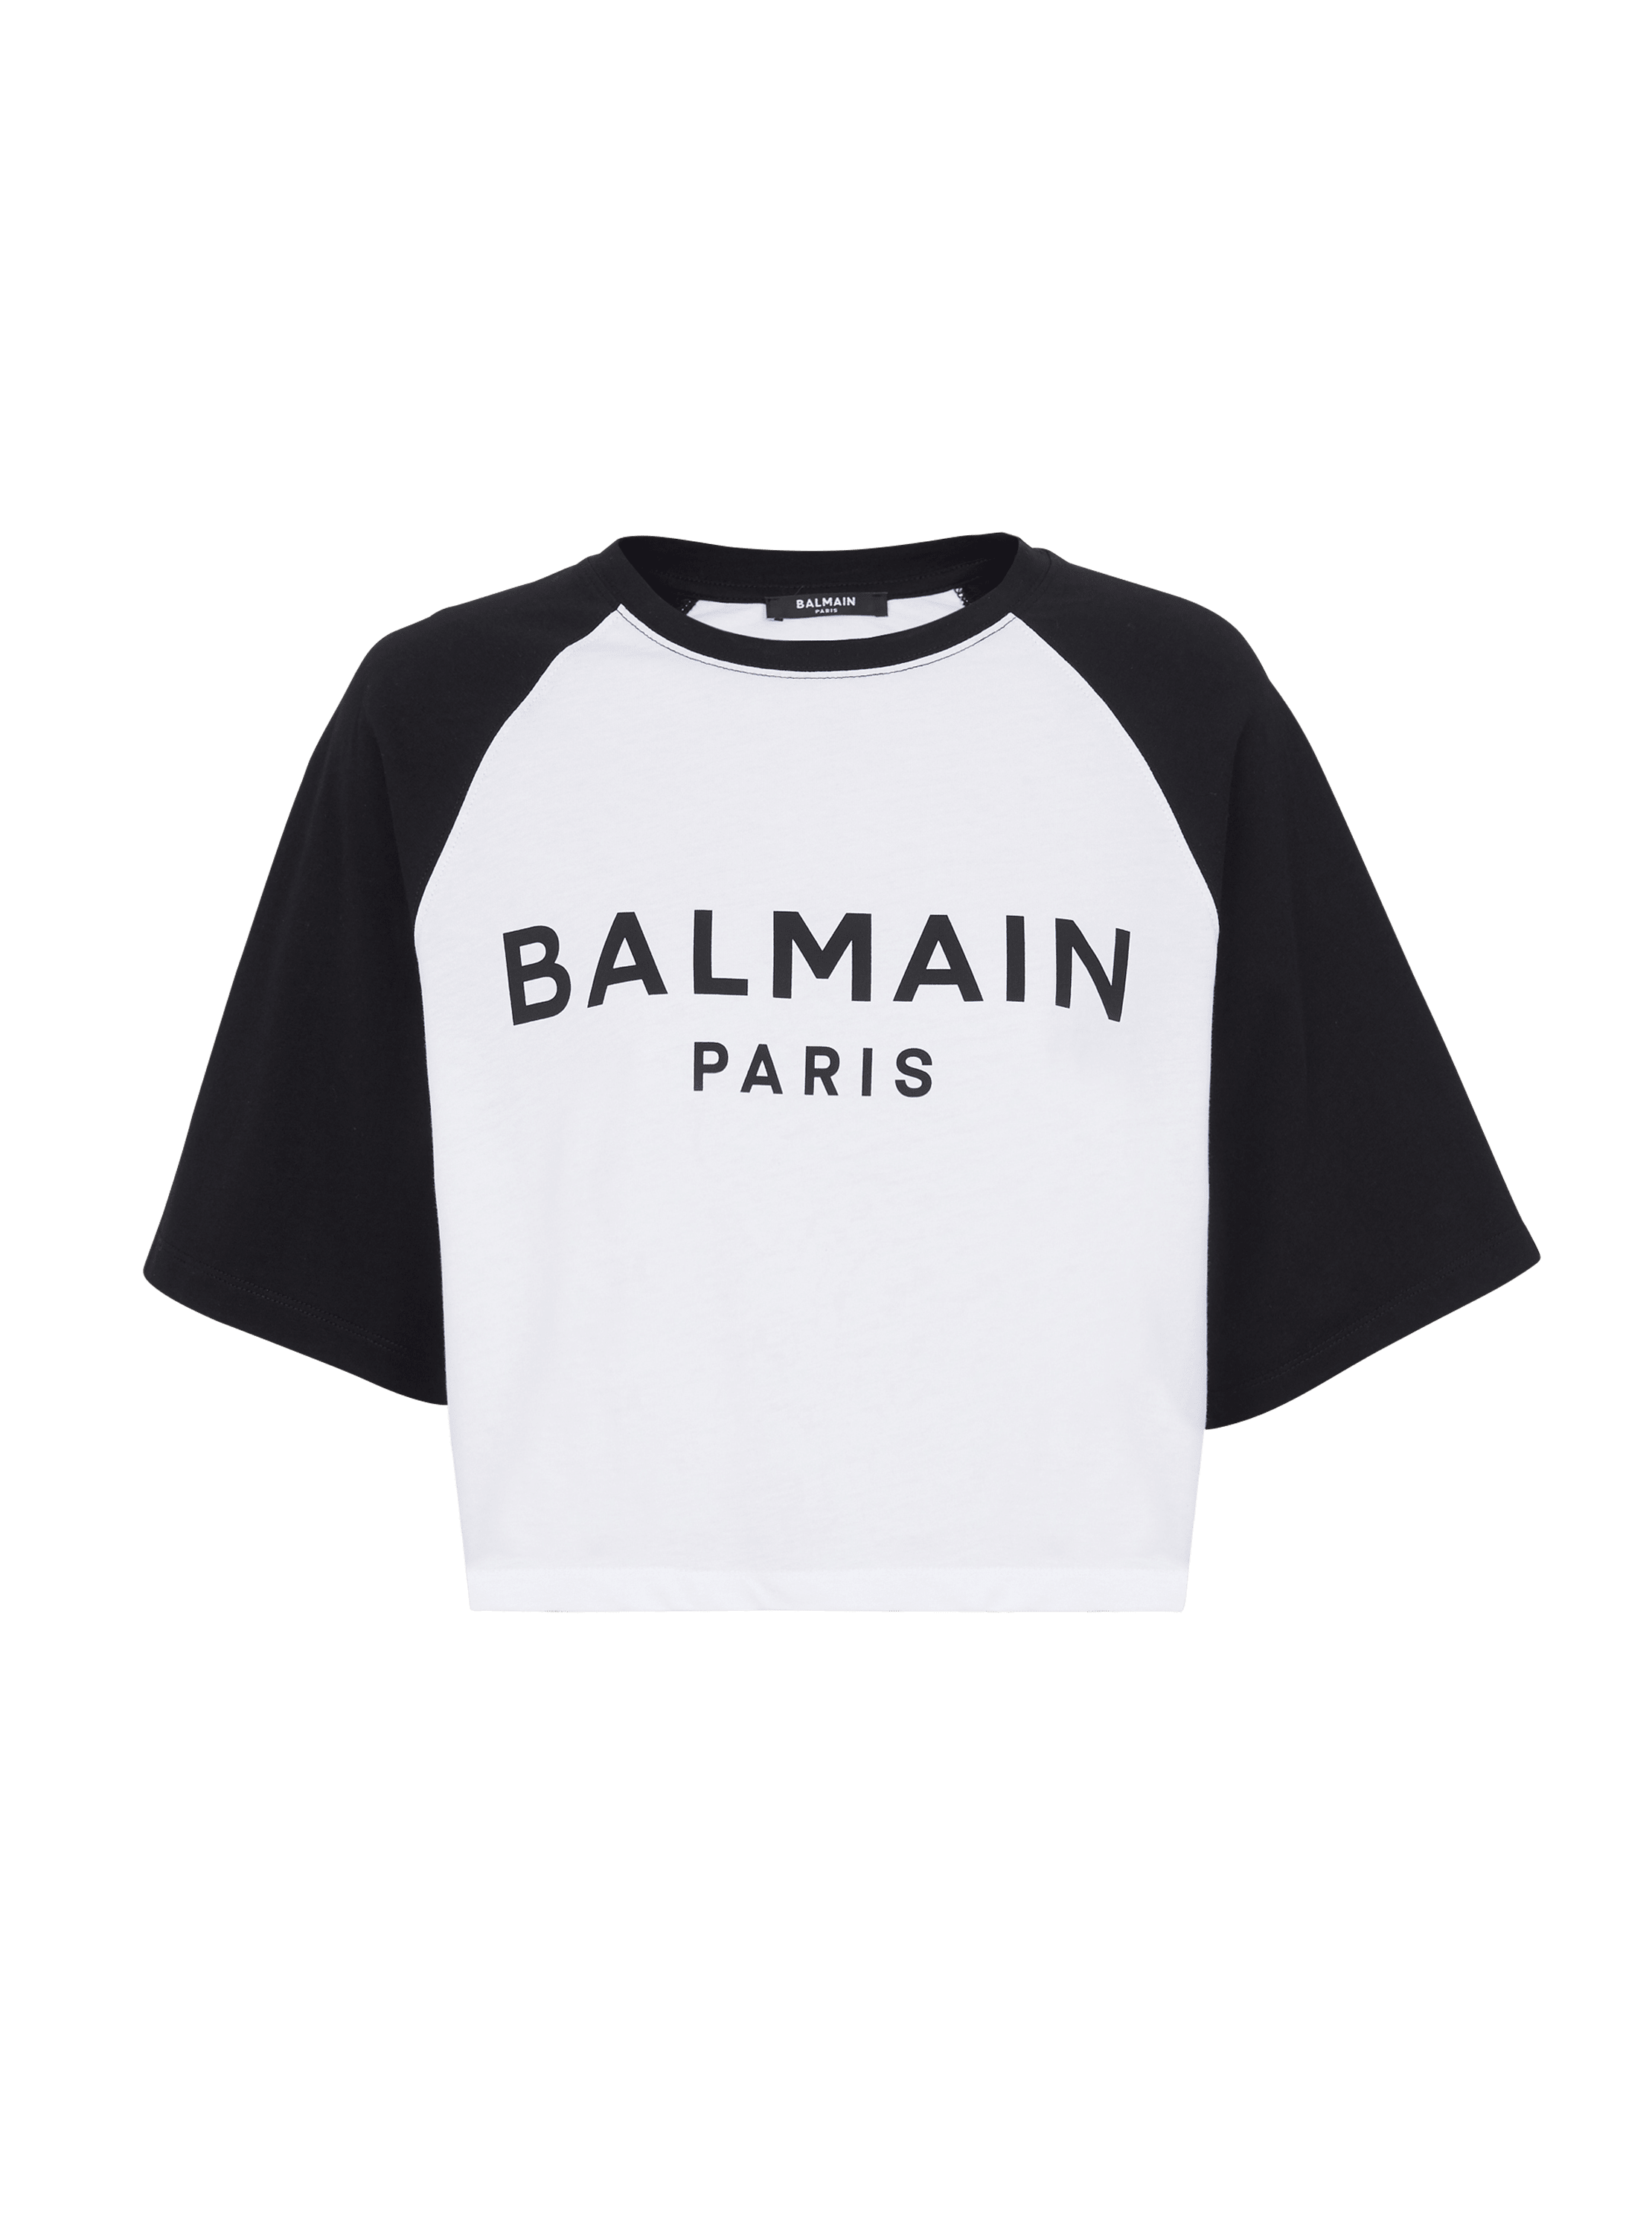 Balmain Paris 티셔츠